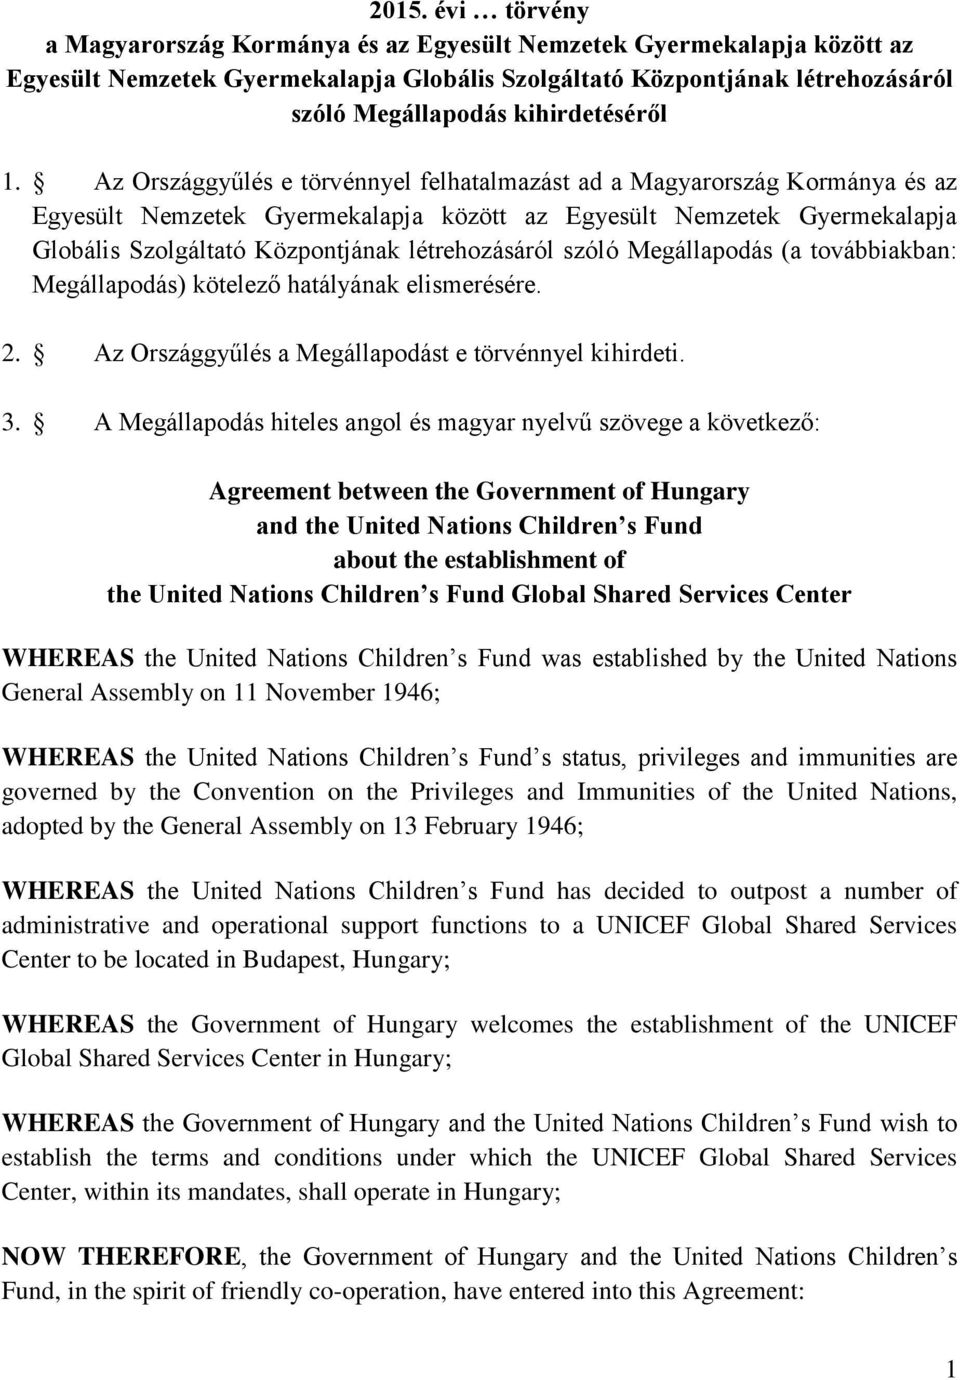 Az Országgyűlés e törvénnyel felhatalmazást ad a Magyarország Kormánya és az Egyesült Nemzetek Gyermekalapja között az Egyesült Nemzetek Gyermekalapja Globális Szolgáltató Központjának létrehozásáról